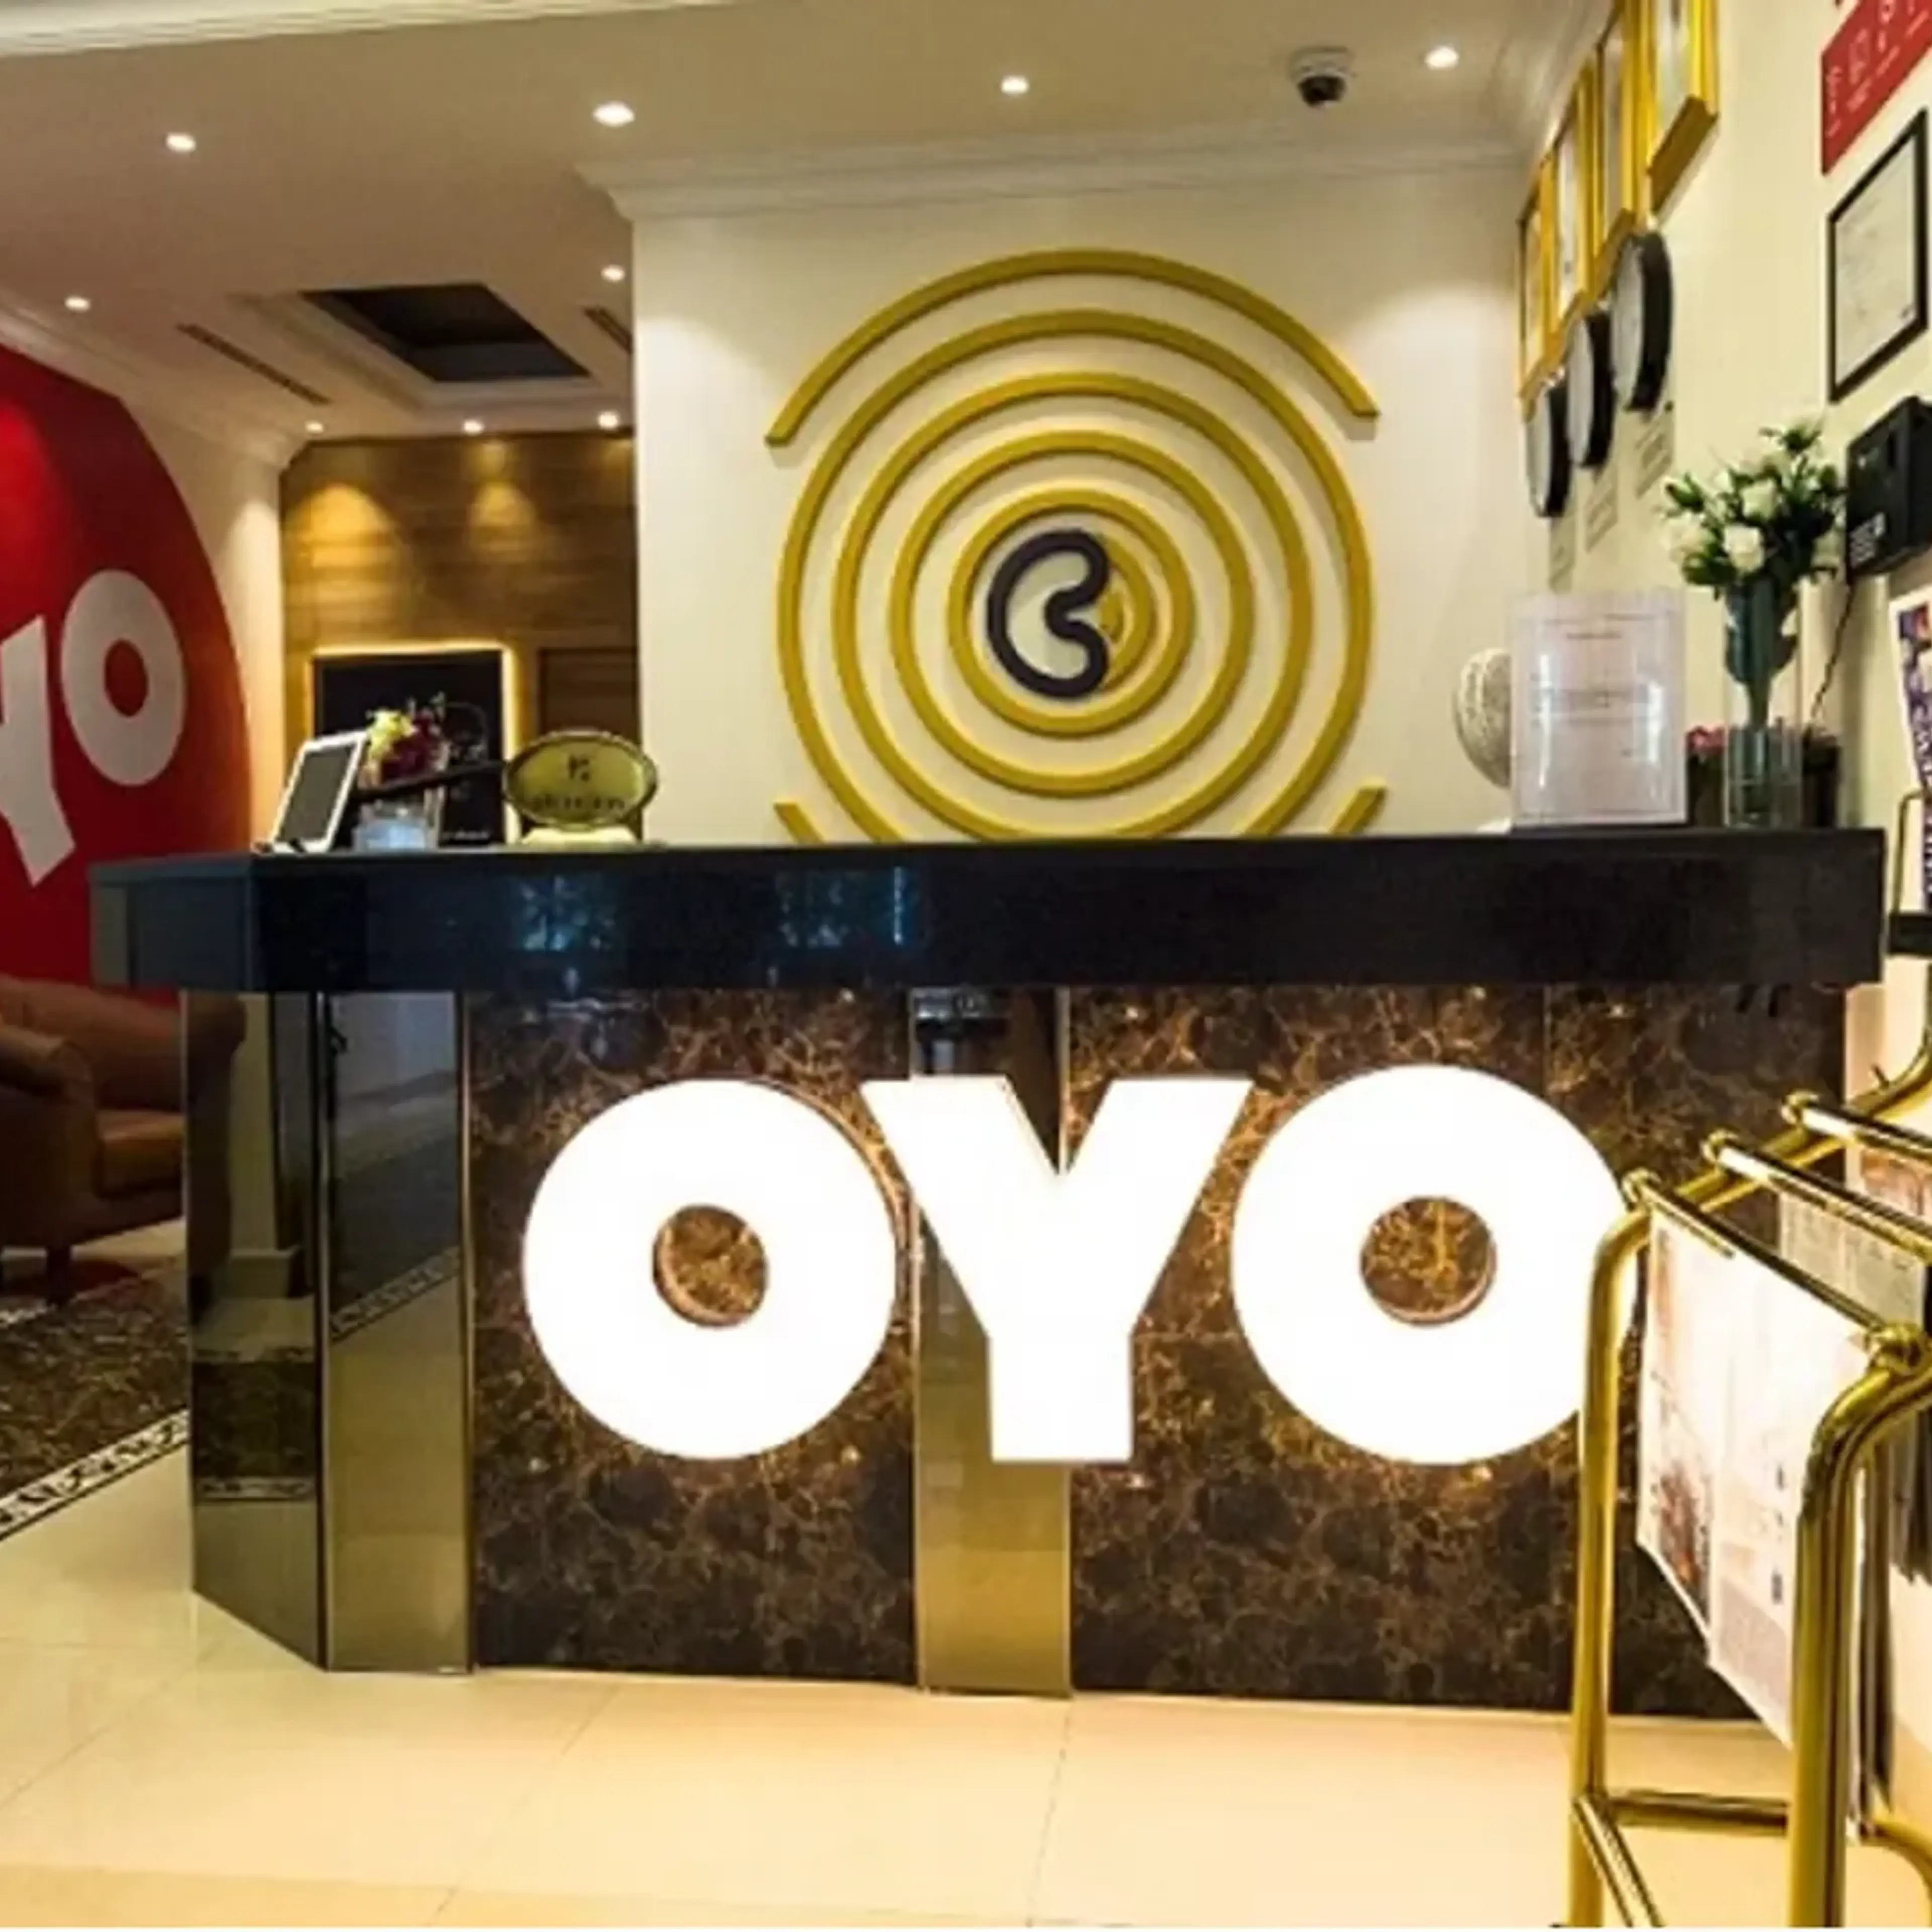 OYO ने दुबई में खोला अपना पहला लग्जरी होटल, भारतीय पर्यटकों को मिलेगा स्पेशल पैकेज